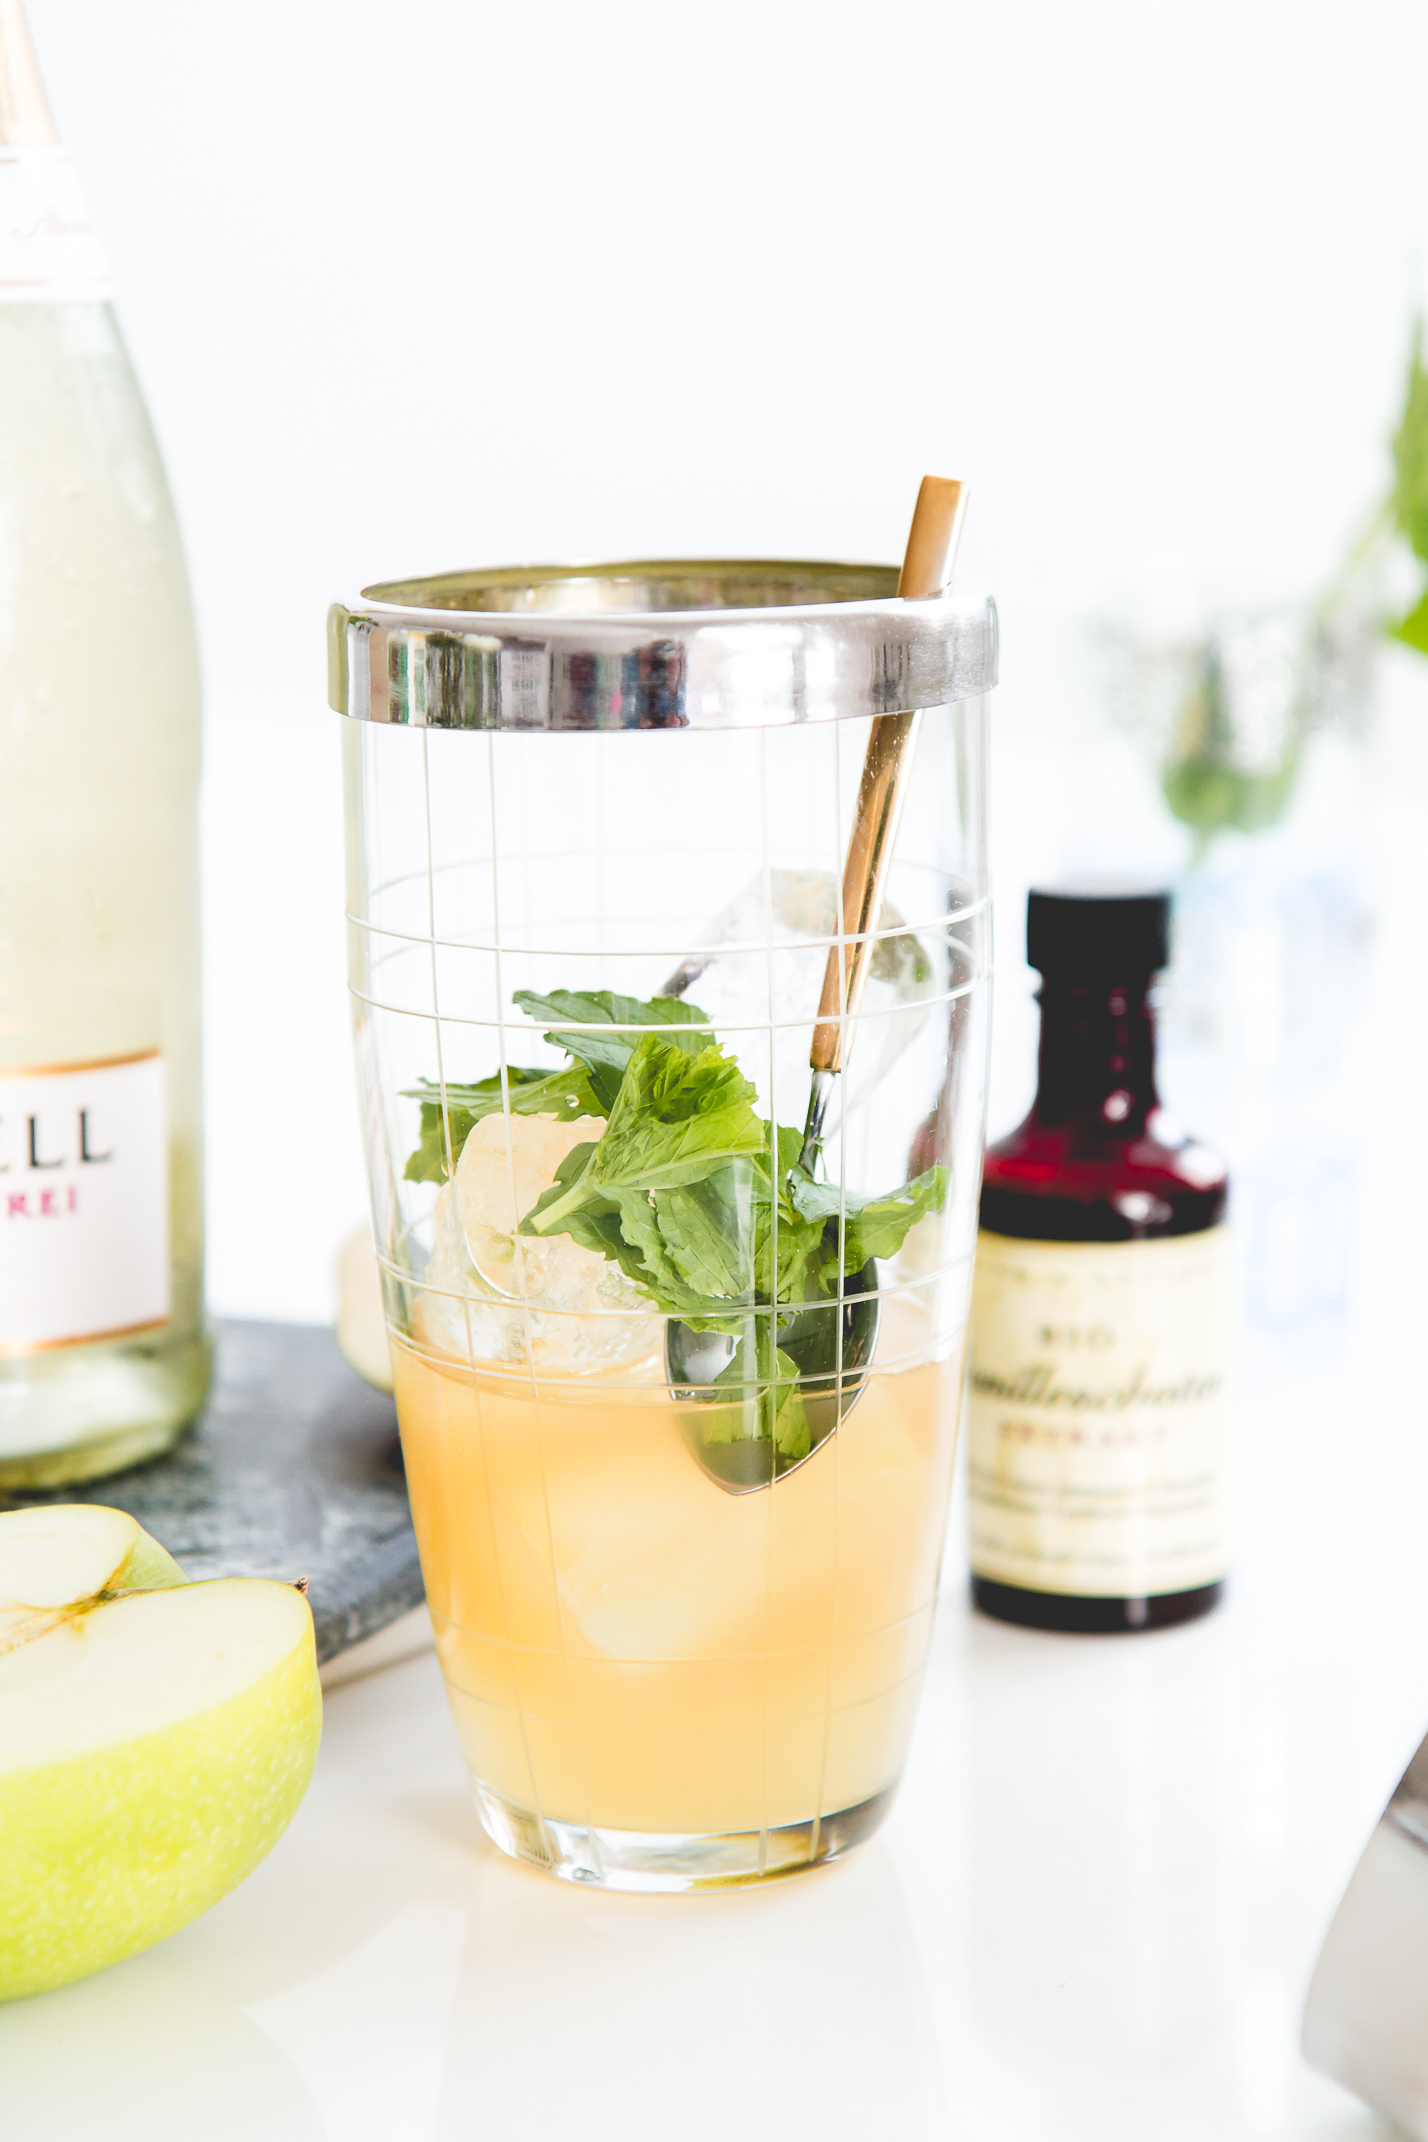 Henkell Alkoholfrei Cocktail Rezept: Summer Strudel | Love Daily Dose